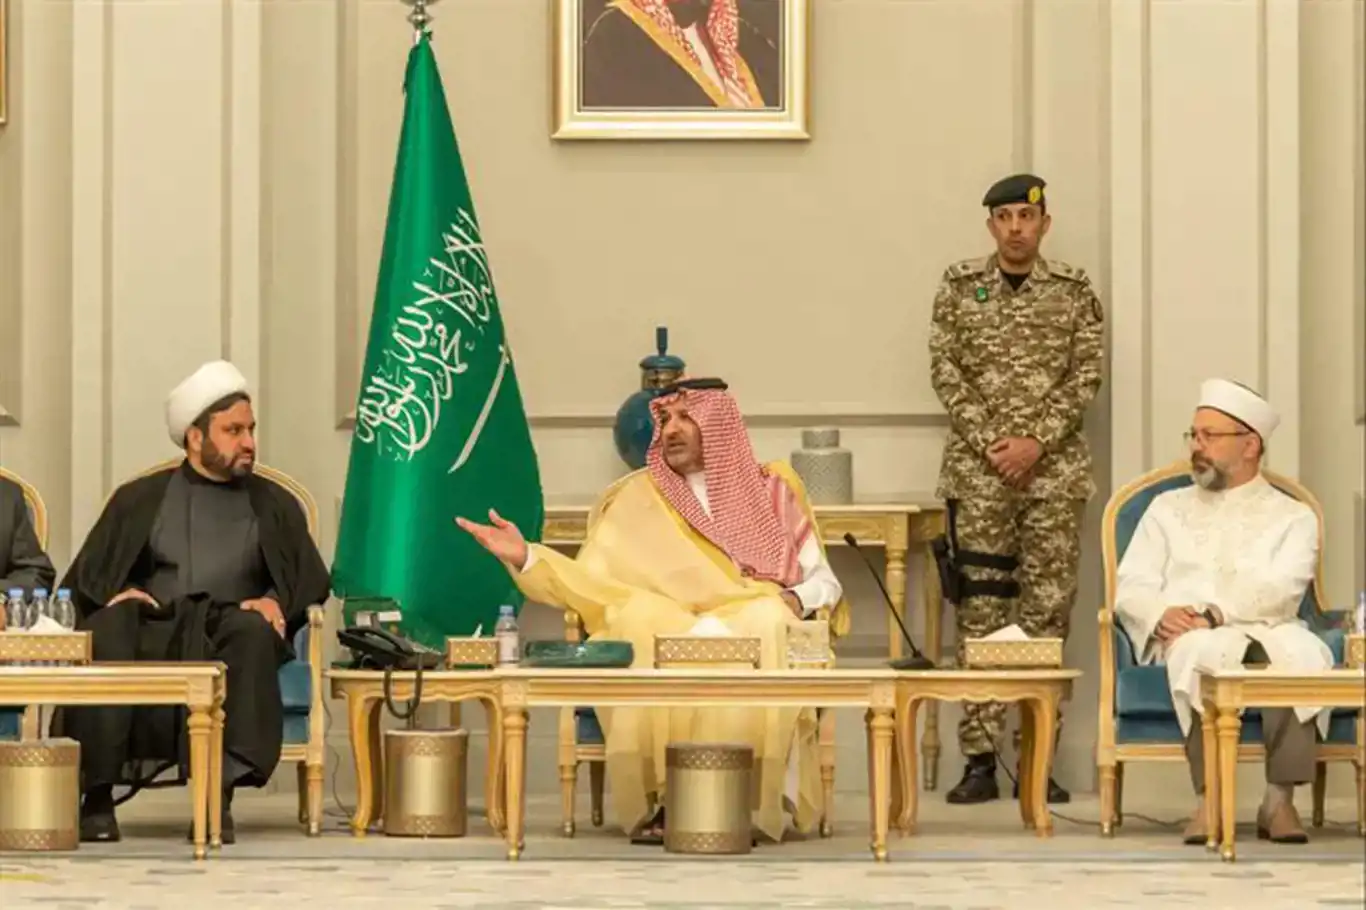 Head of Türkiye’s religious affairs meets Muslim leaders during visit to Saudi Arabia